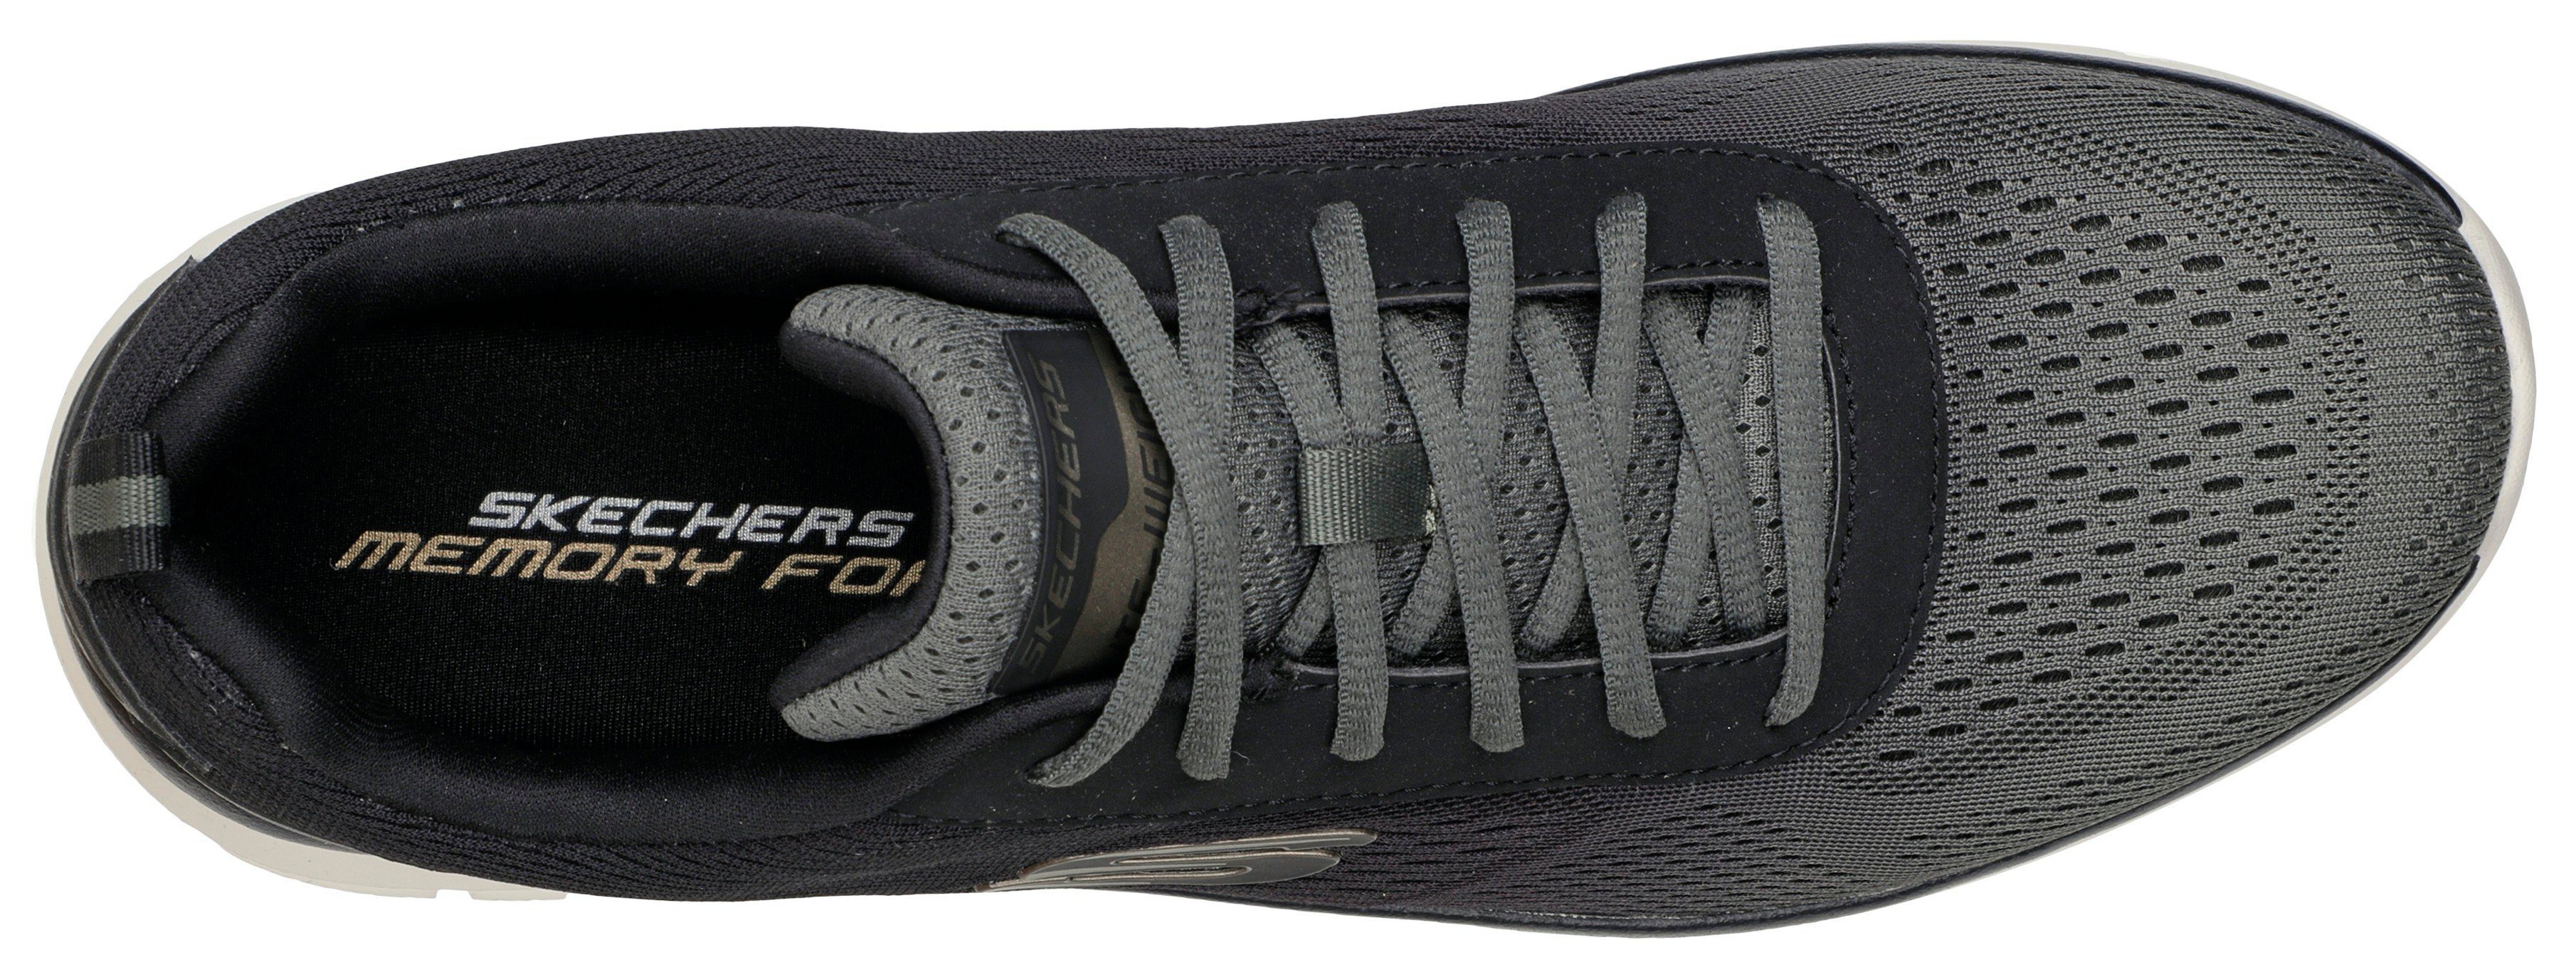 Kontrast-Details dezenten TRACK Sneaker olivgrün-schwarz Skechers mit